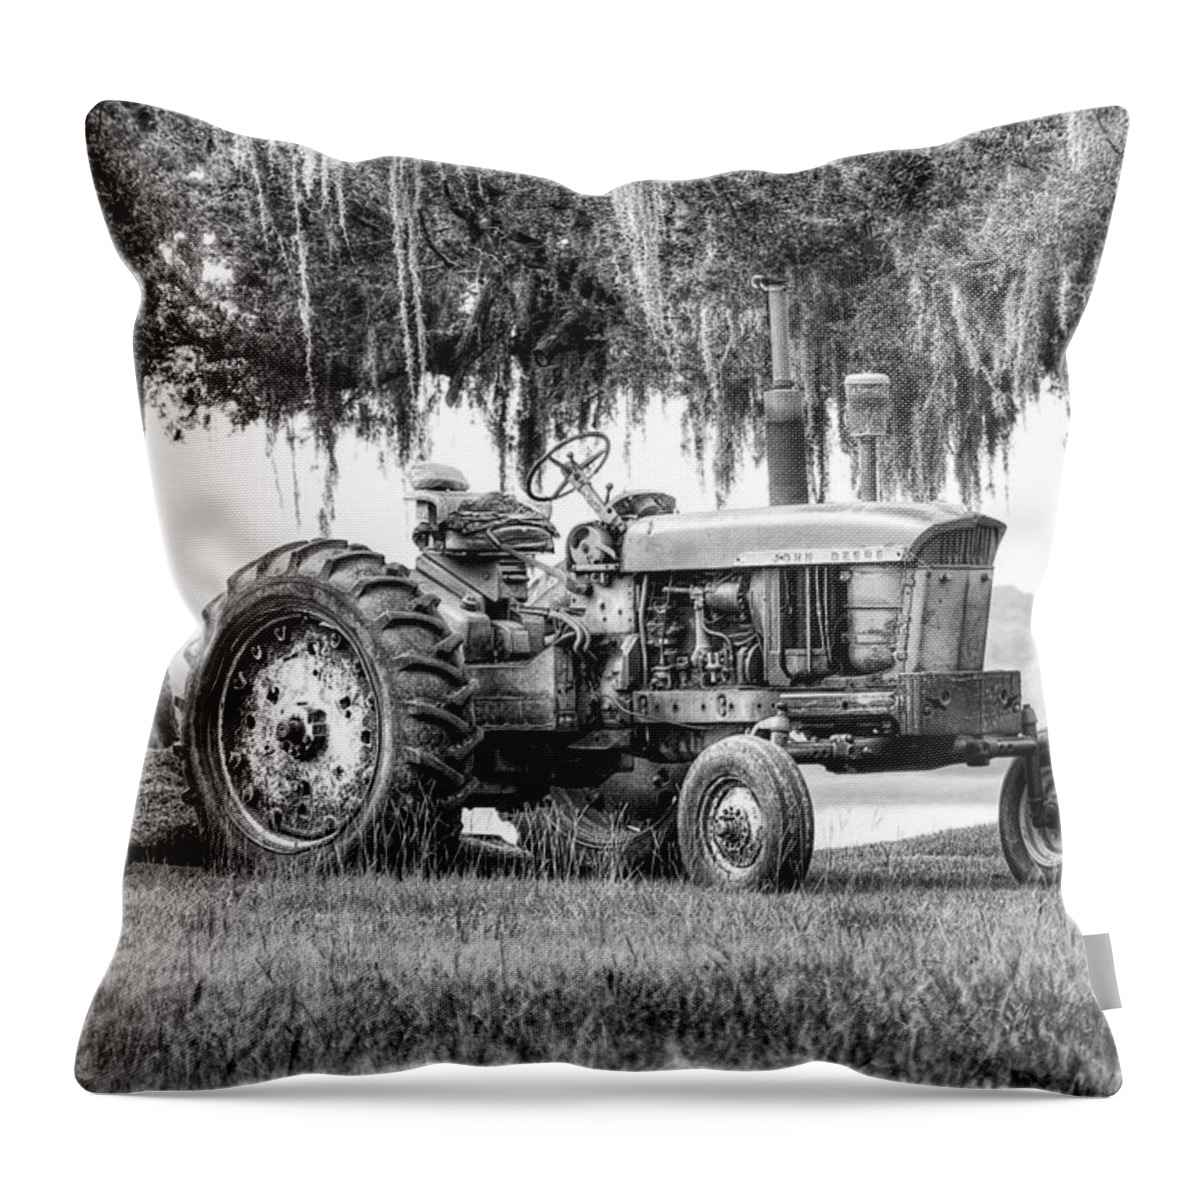 Bush Hog Throw Pillow featuring the photograph John Deer Tractor Under the Old Cedar by Scott Hansen